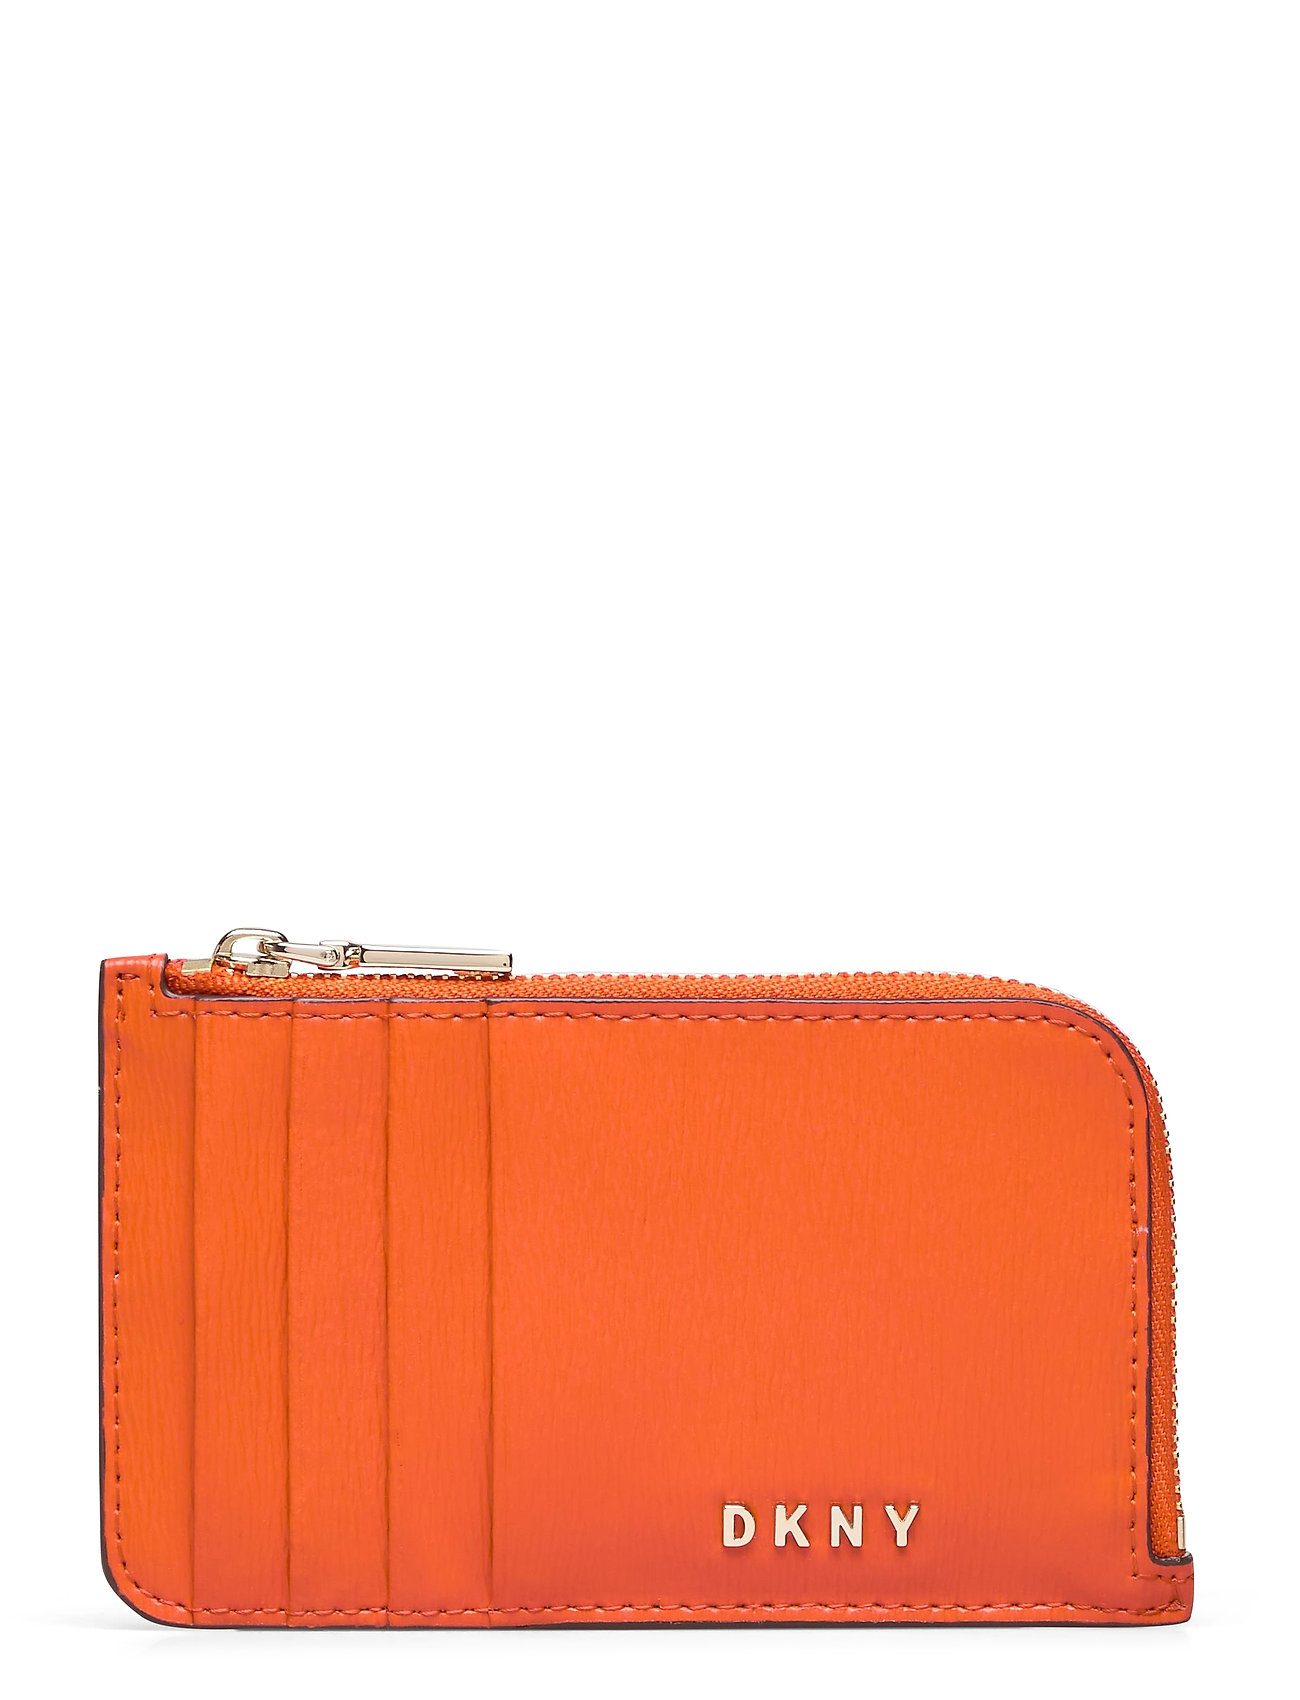 Uenighed assistent nøgen Guld DKNY Bryant Sutton Bags Card Holders & Wallets Card Holder Orange DKNY  Bags punge & kortholdere for dame - Pashion.dk